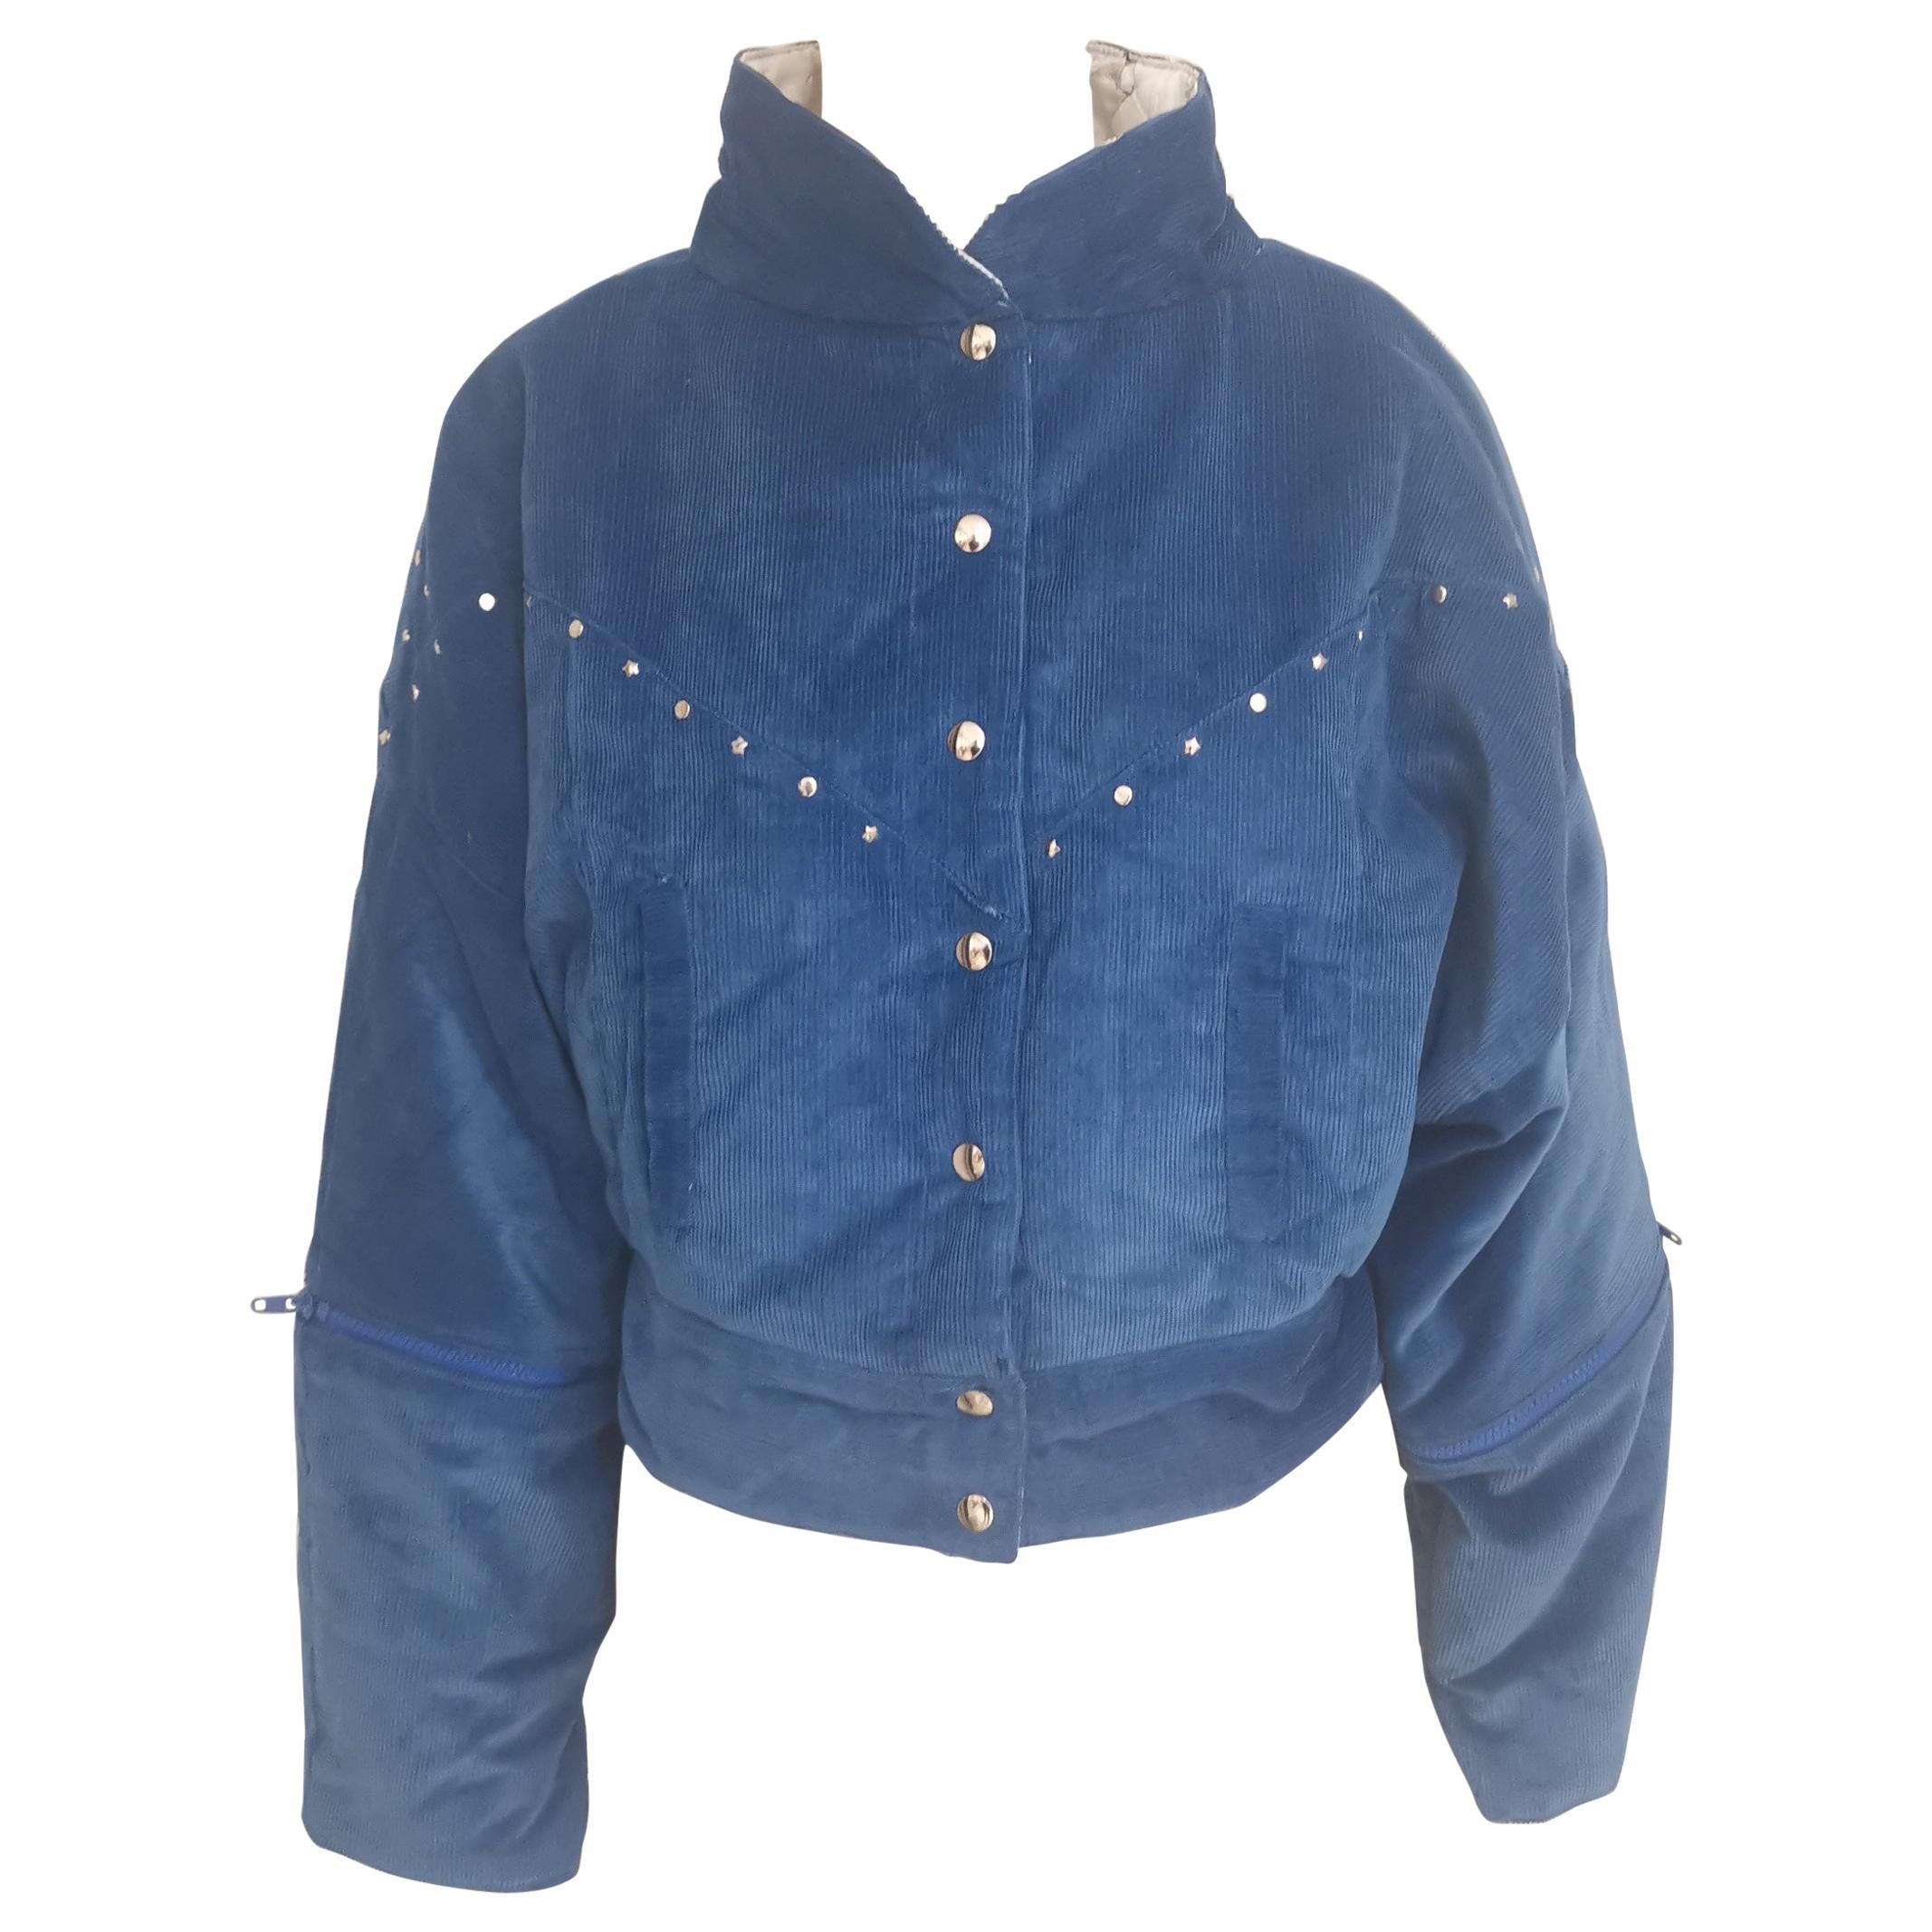 Vintage blue suede bomber jacket